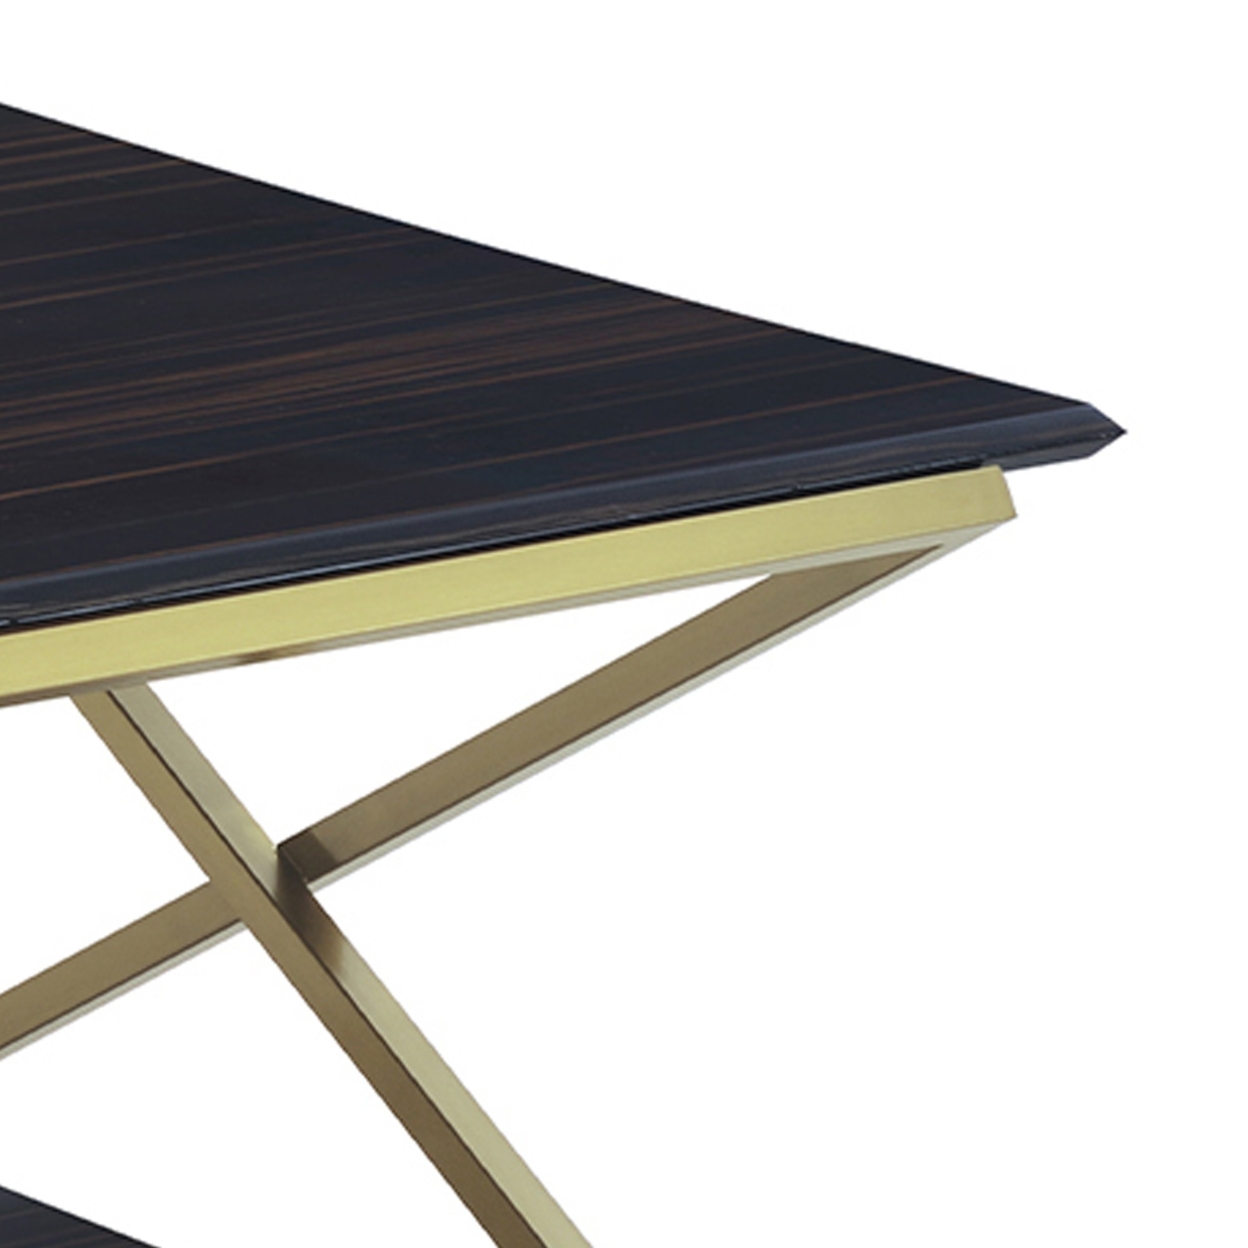 Westlake Dark Brown Veneer Coffee Table With Brushed Gold Legs- Saltoro Sherpi